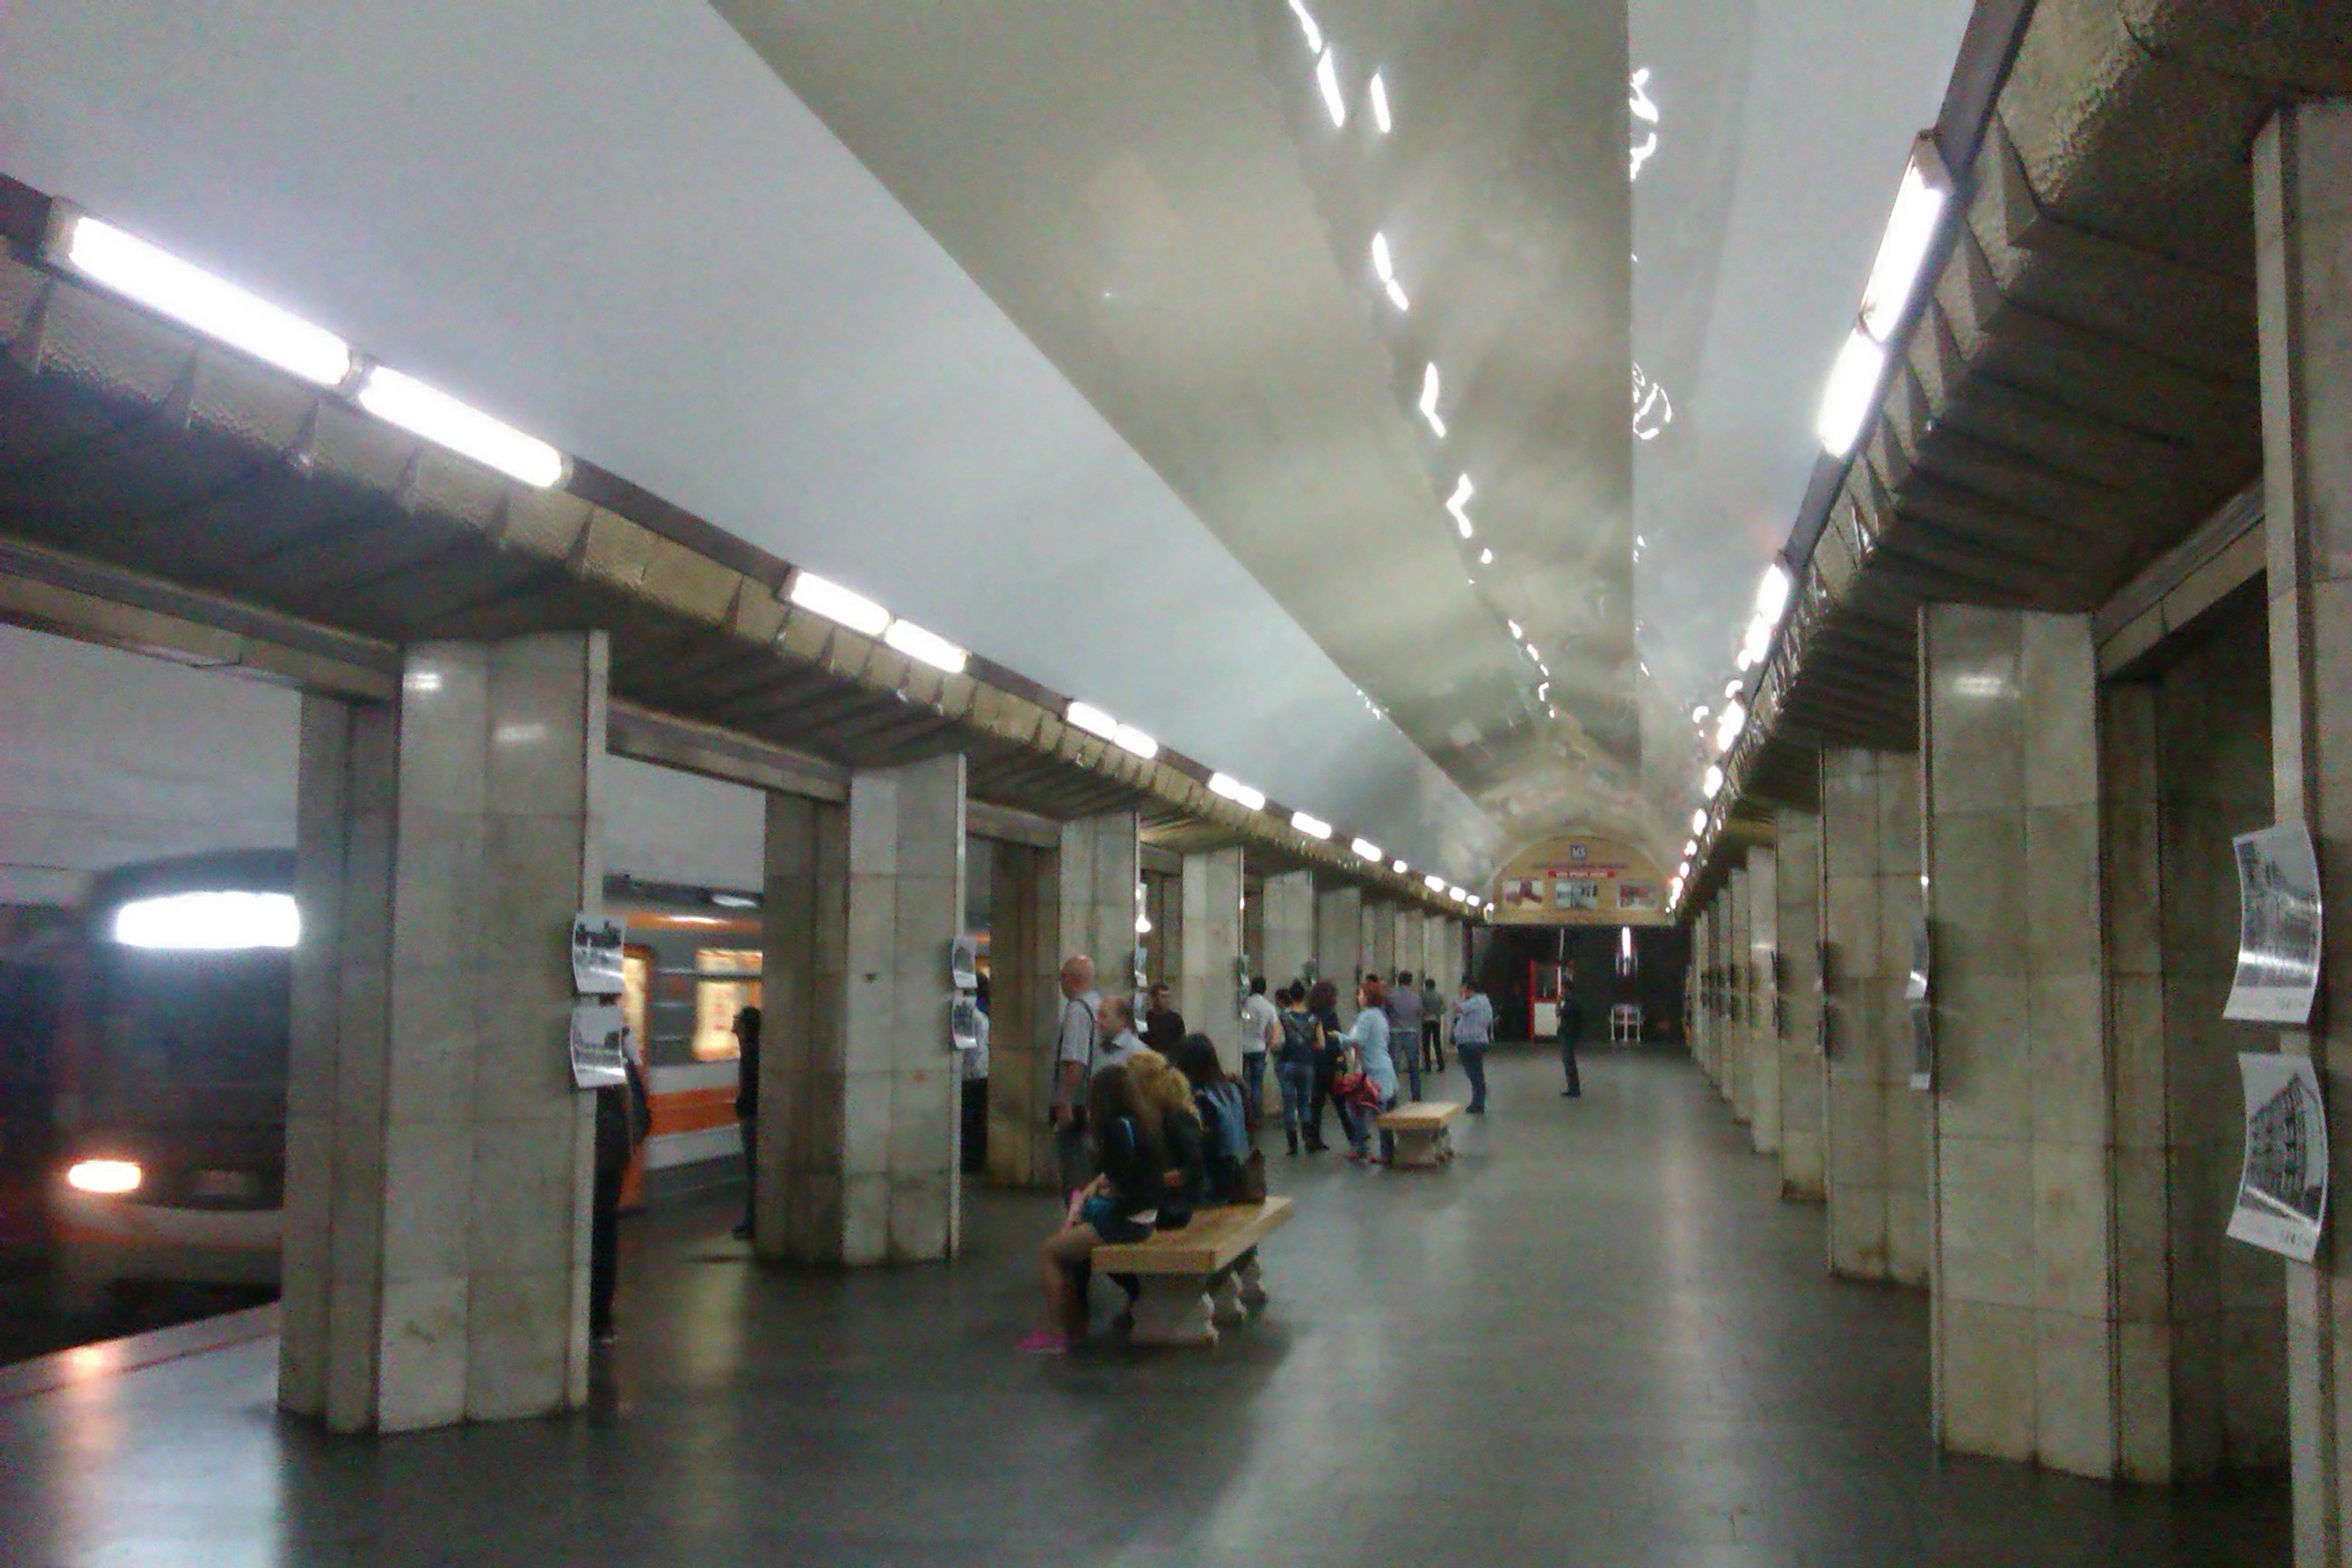 26-ամյա երիտասարդը գիշերը ներխուժել է մետրոյի «Բարեկամություն» կայարան եւ փորձել է ներկել գնացքները. այն կանխվել է